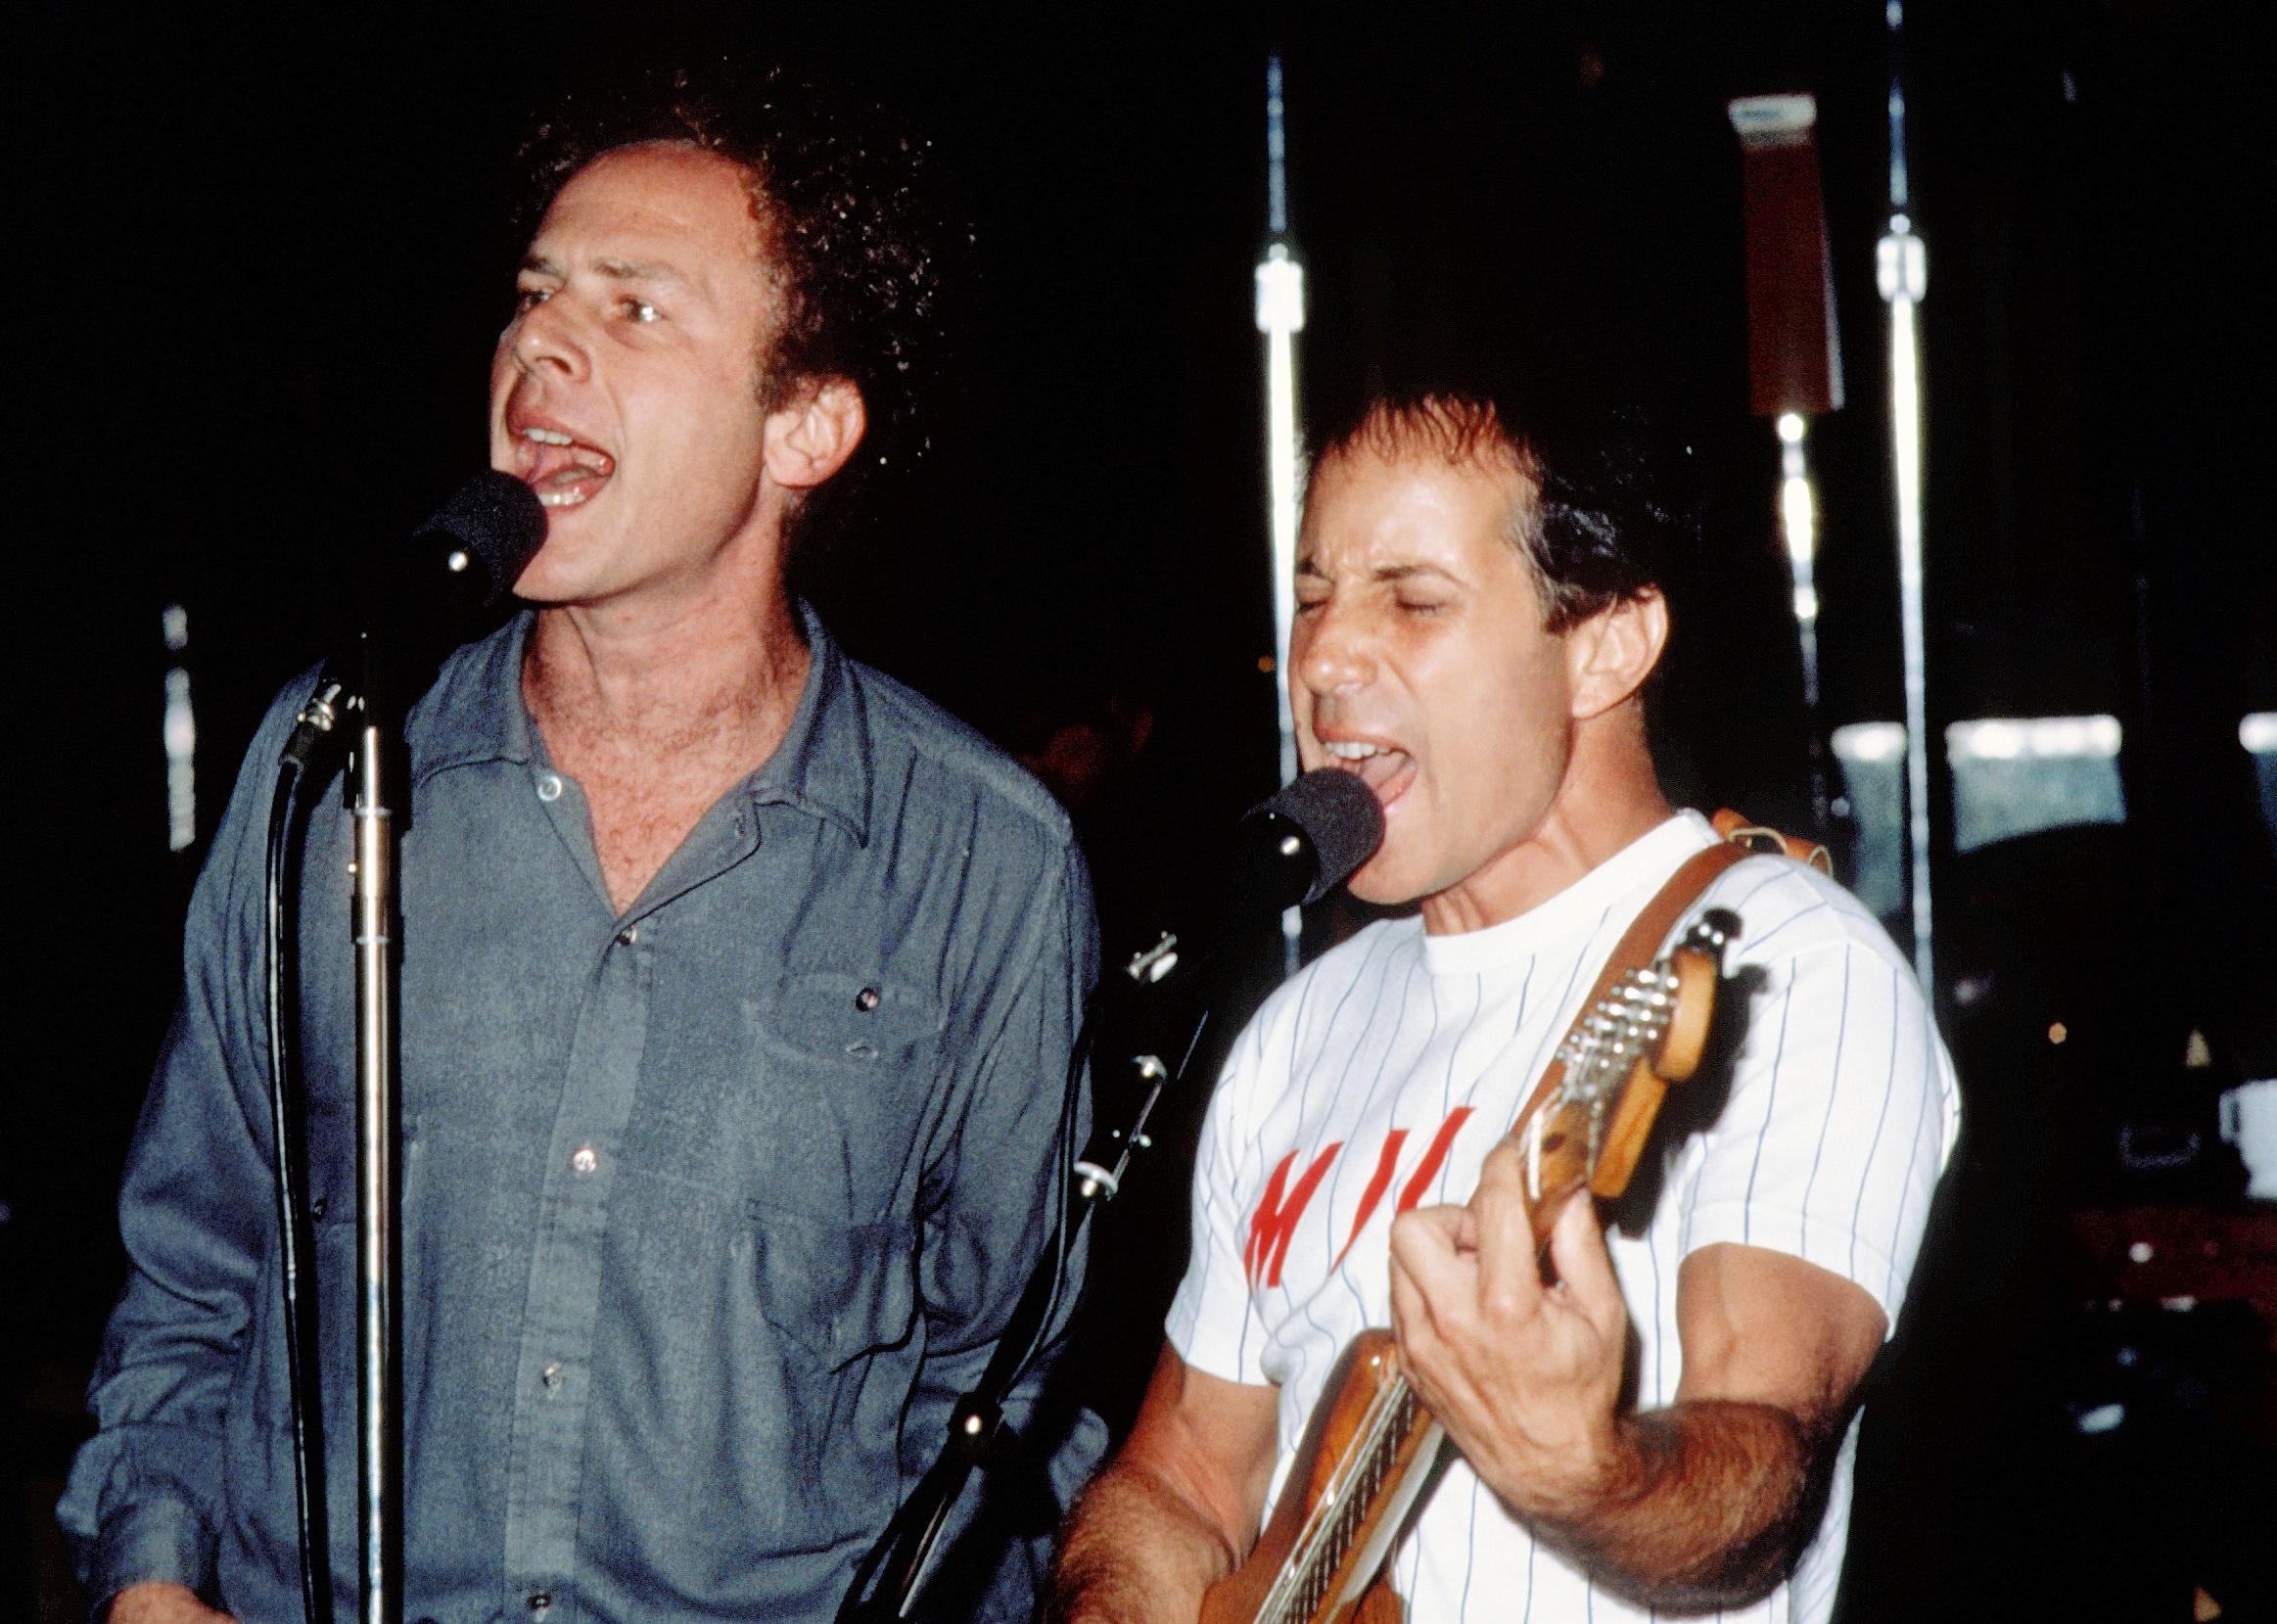 Paul Simon and Art Garfunkel performing onstage.